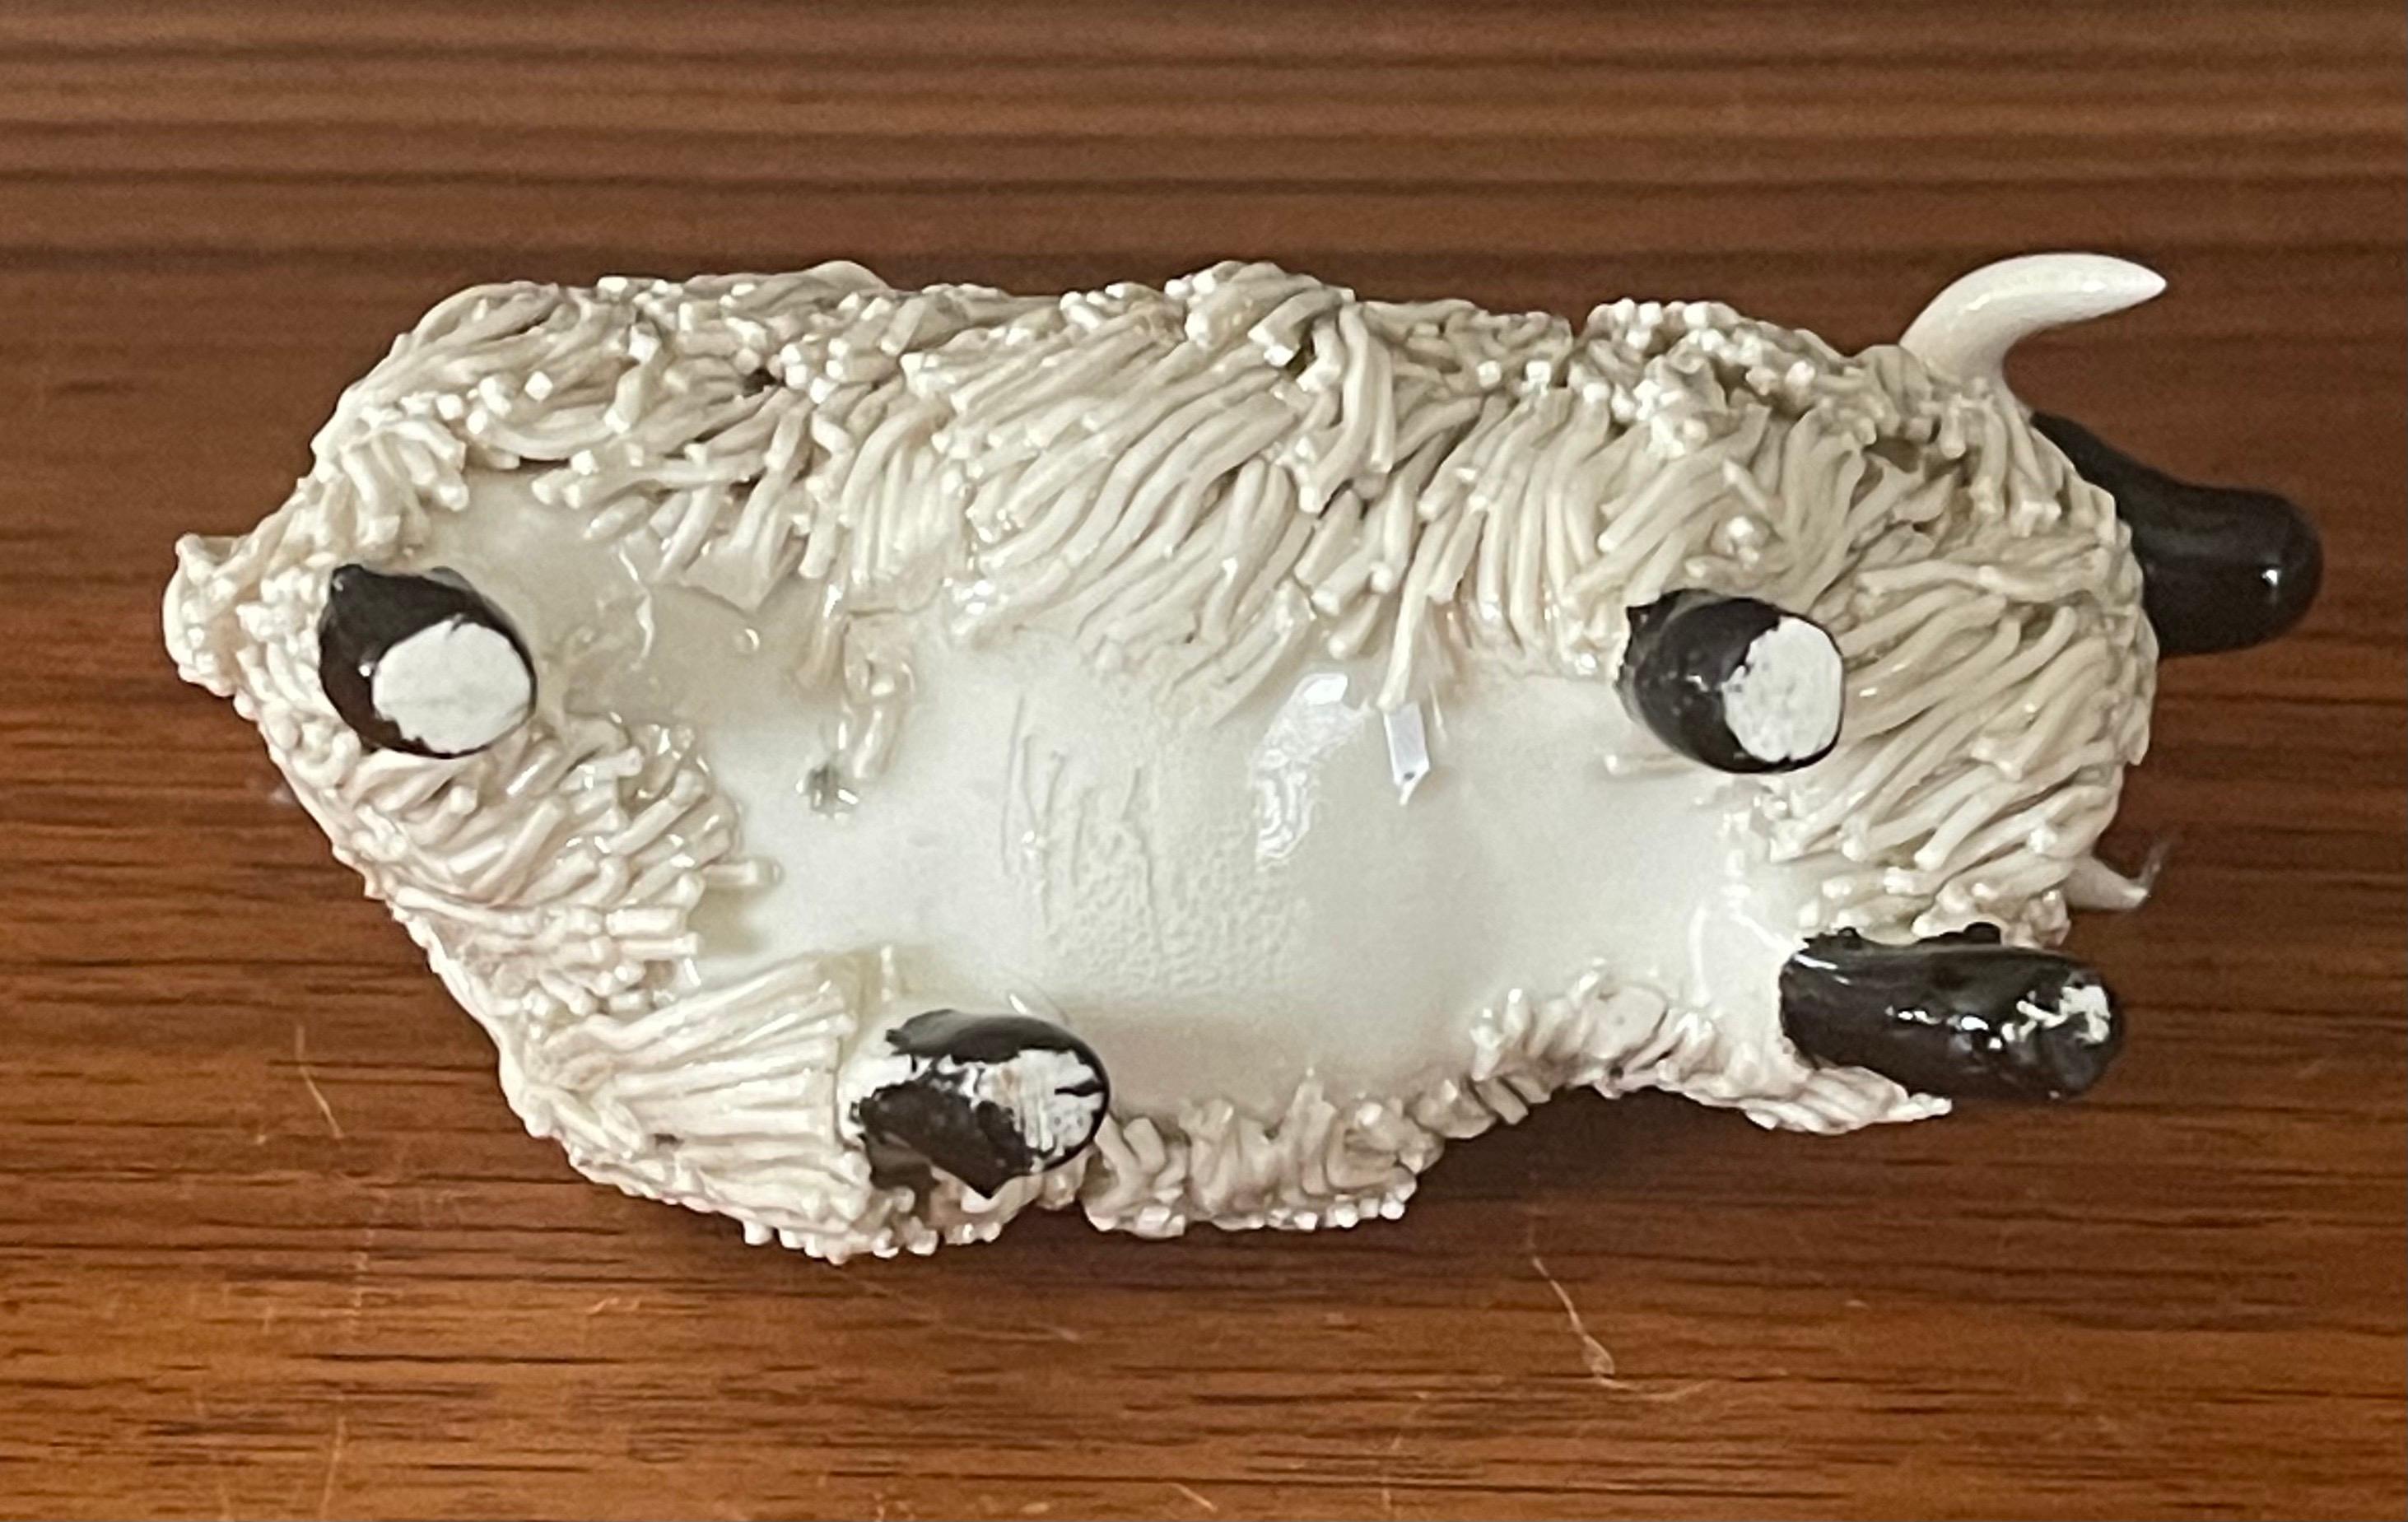 Pair of Midcentury Ceramic Rams / Sheep Figurines 3